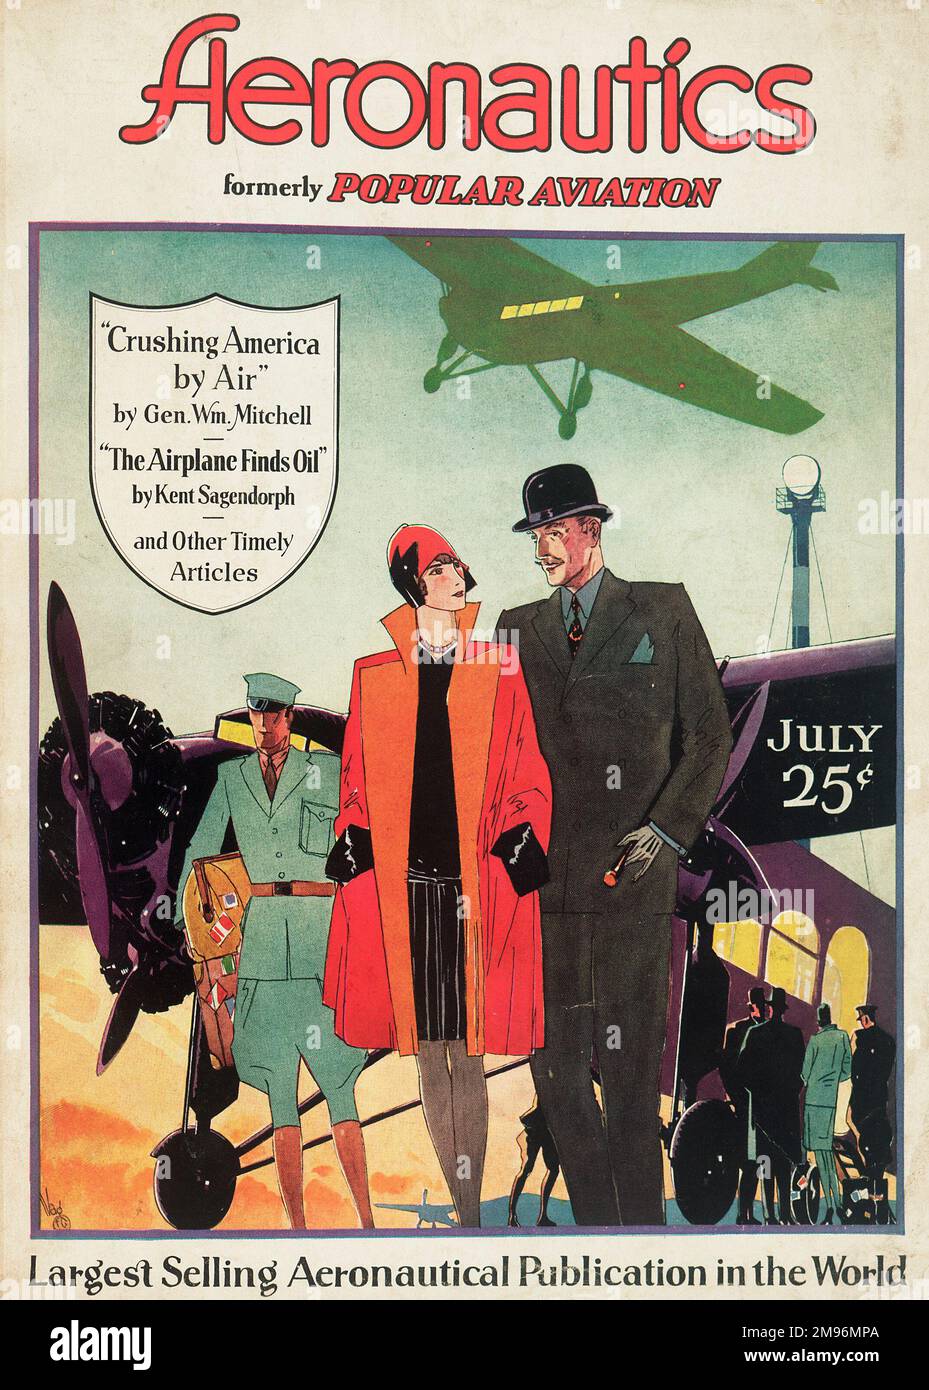 El diseño de la portada, Aeronautics Magazine, anteriormente Popular Aviation, muestra a una pareja bien vestida caminando a través de una pista de aterrizaje del aeropuerto, su chofer siguiendo detrás, llevando su equipaje. Foto de stock